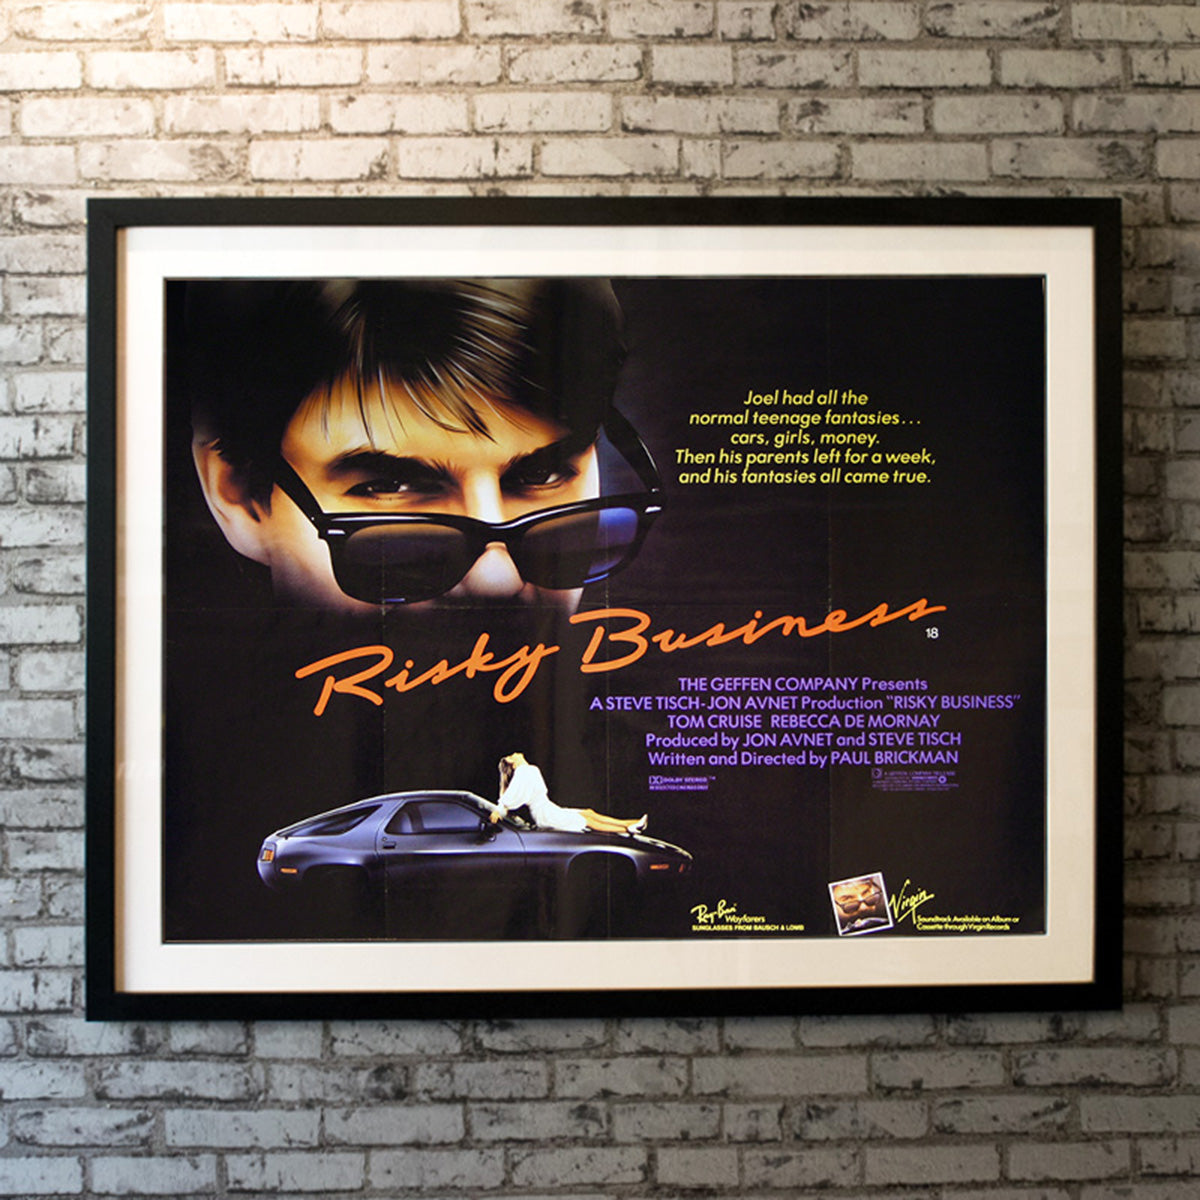 Original Movie Poster of Risky Business (1983)